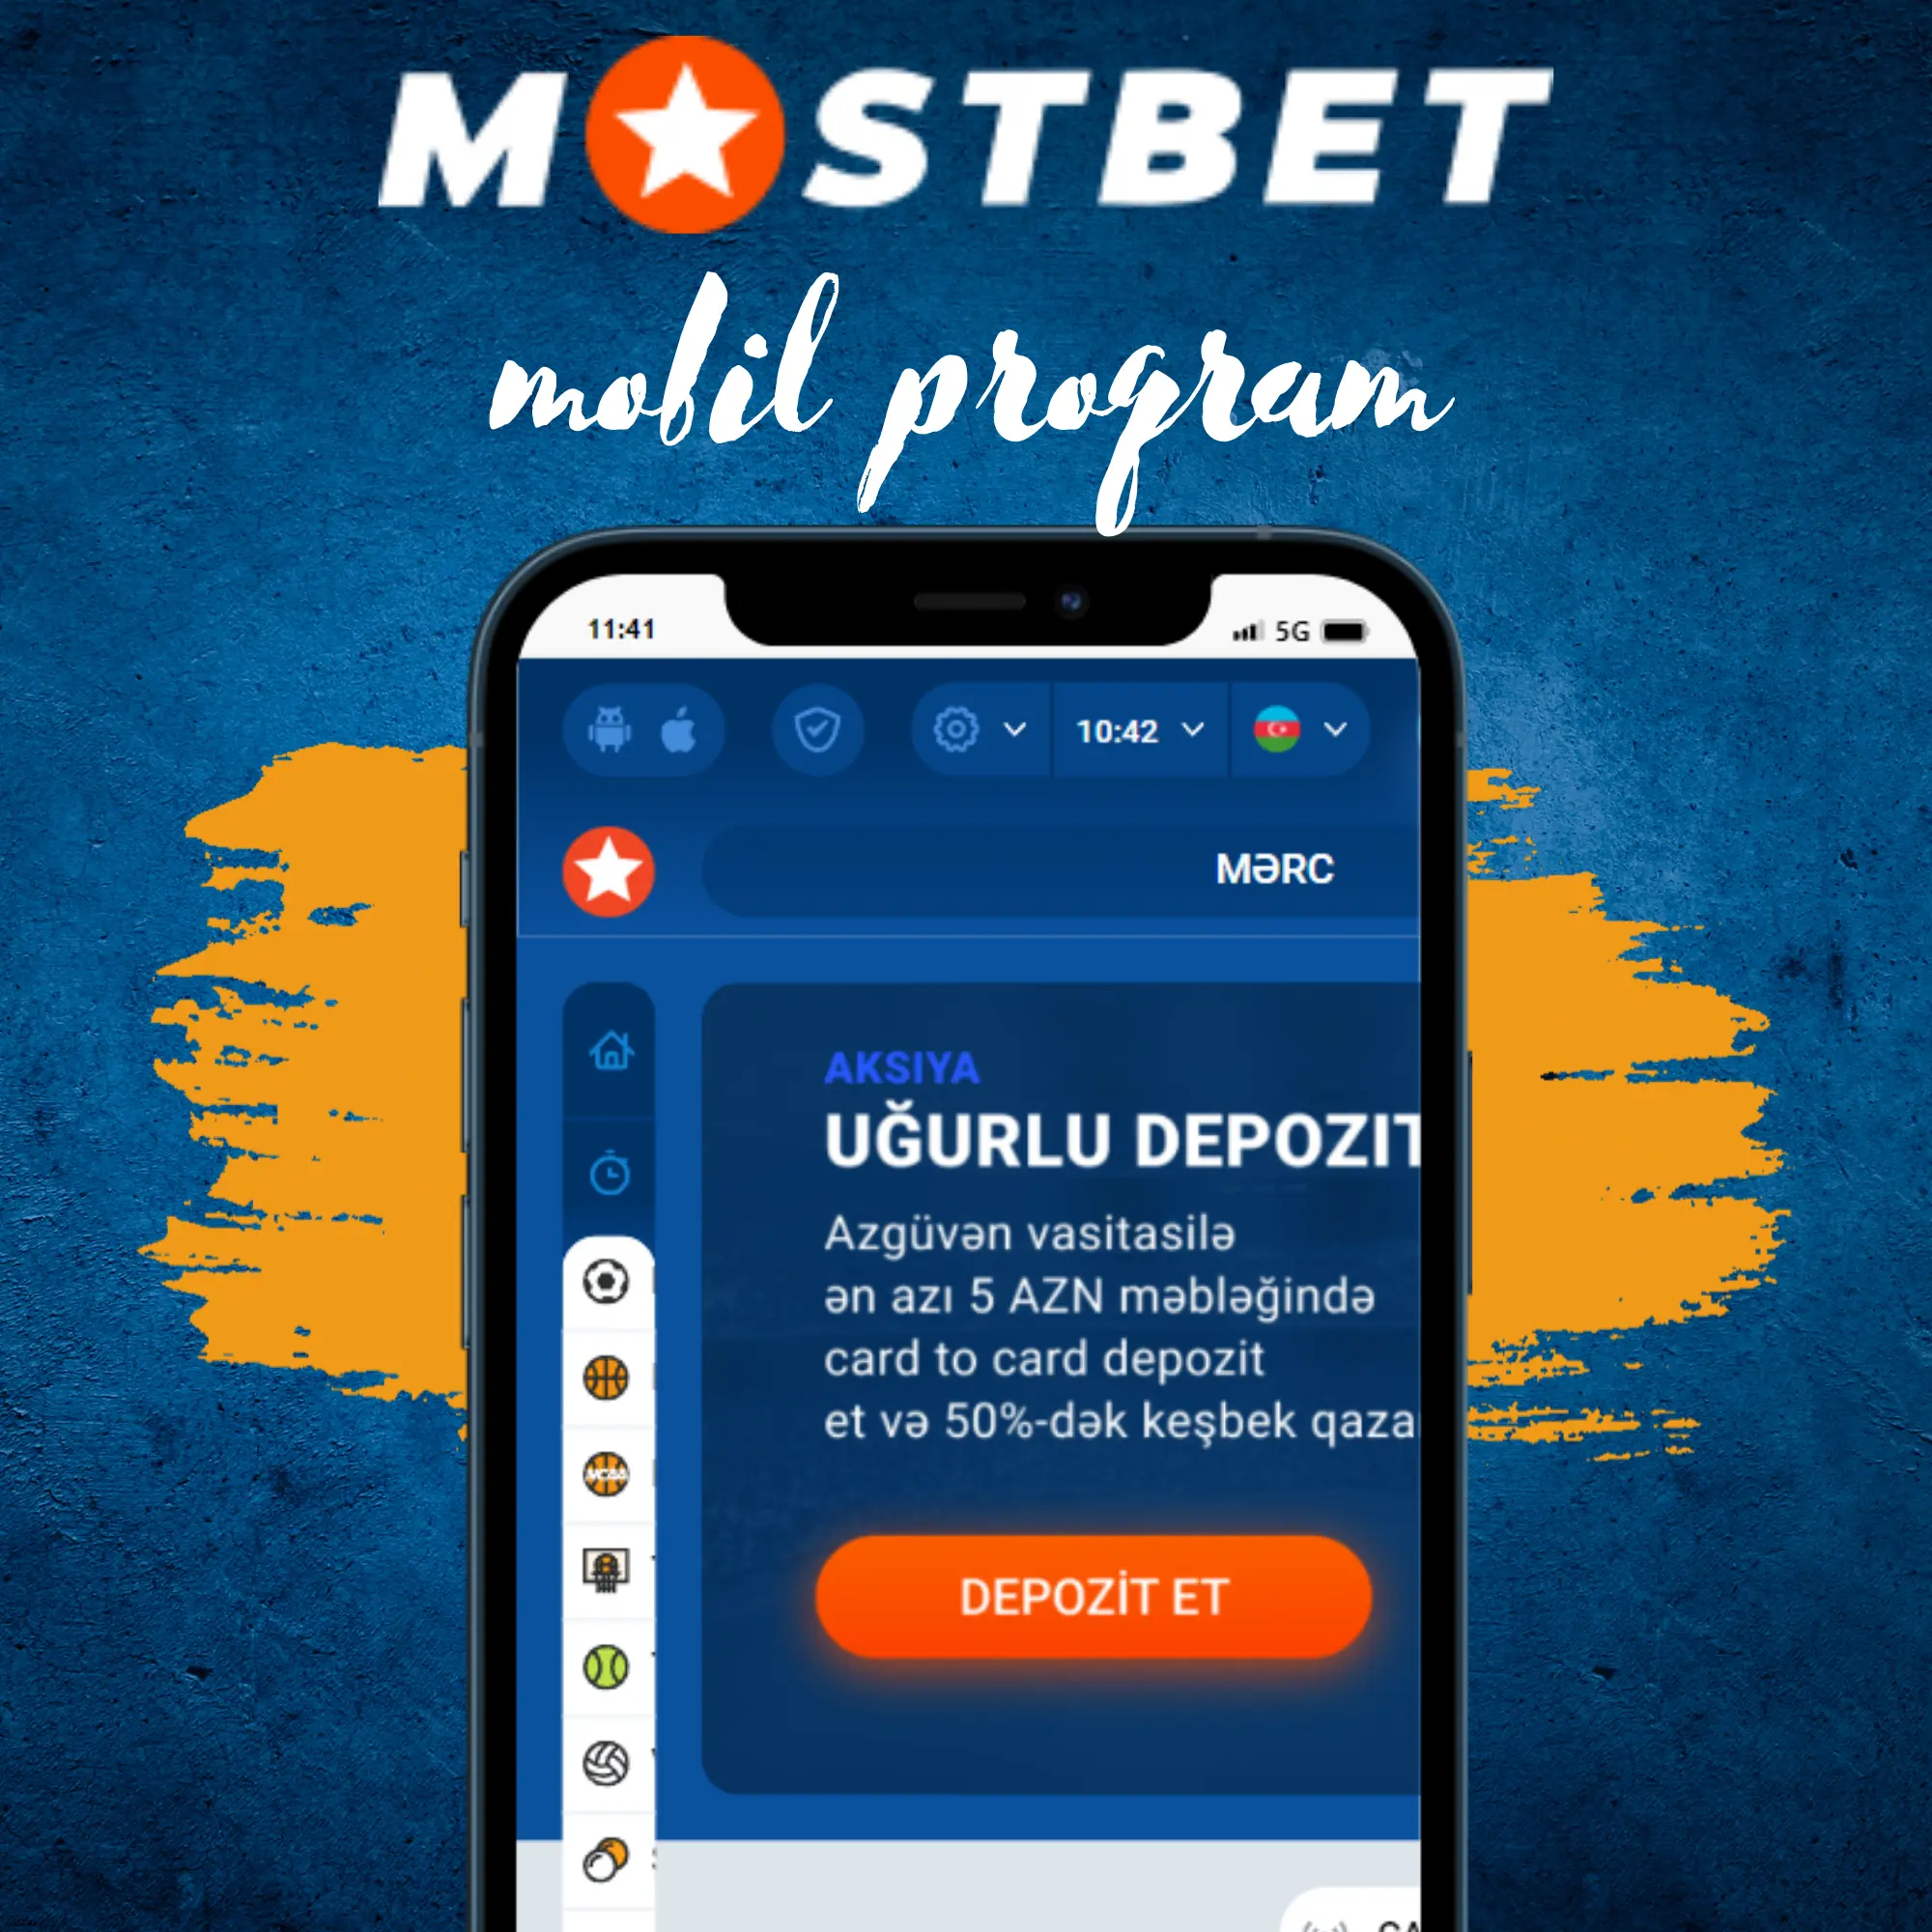 Mobil program Mostbet AZ-90